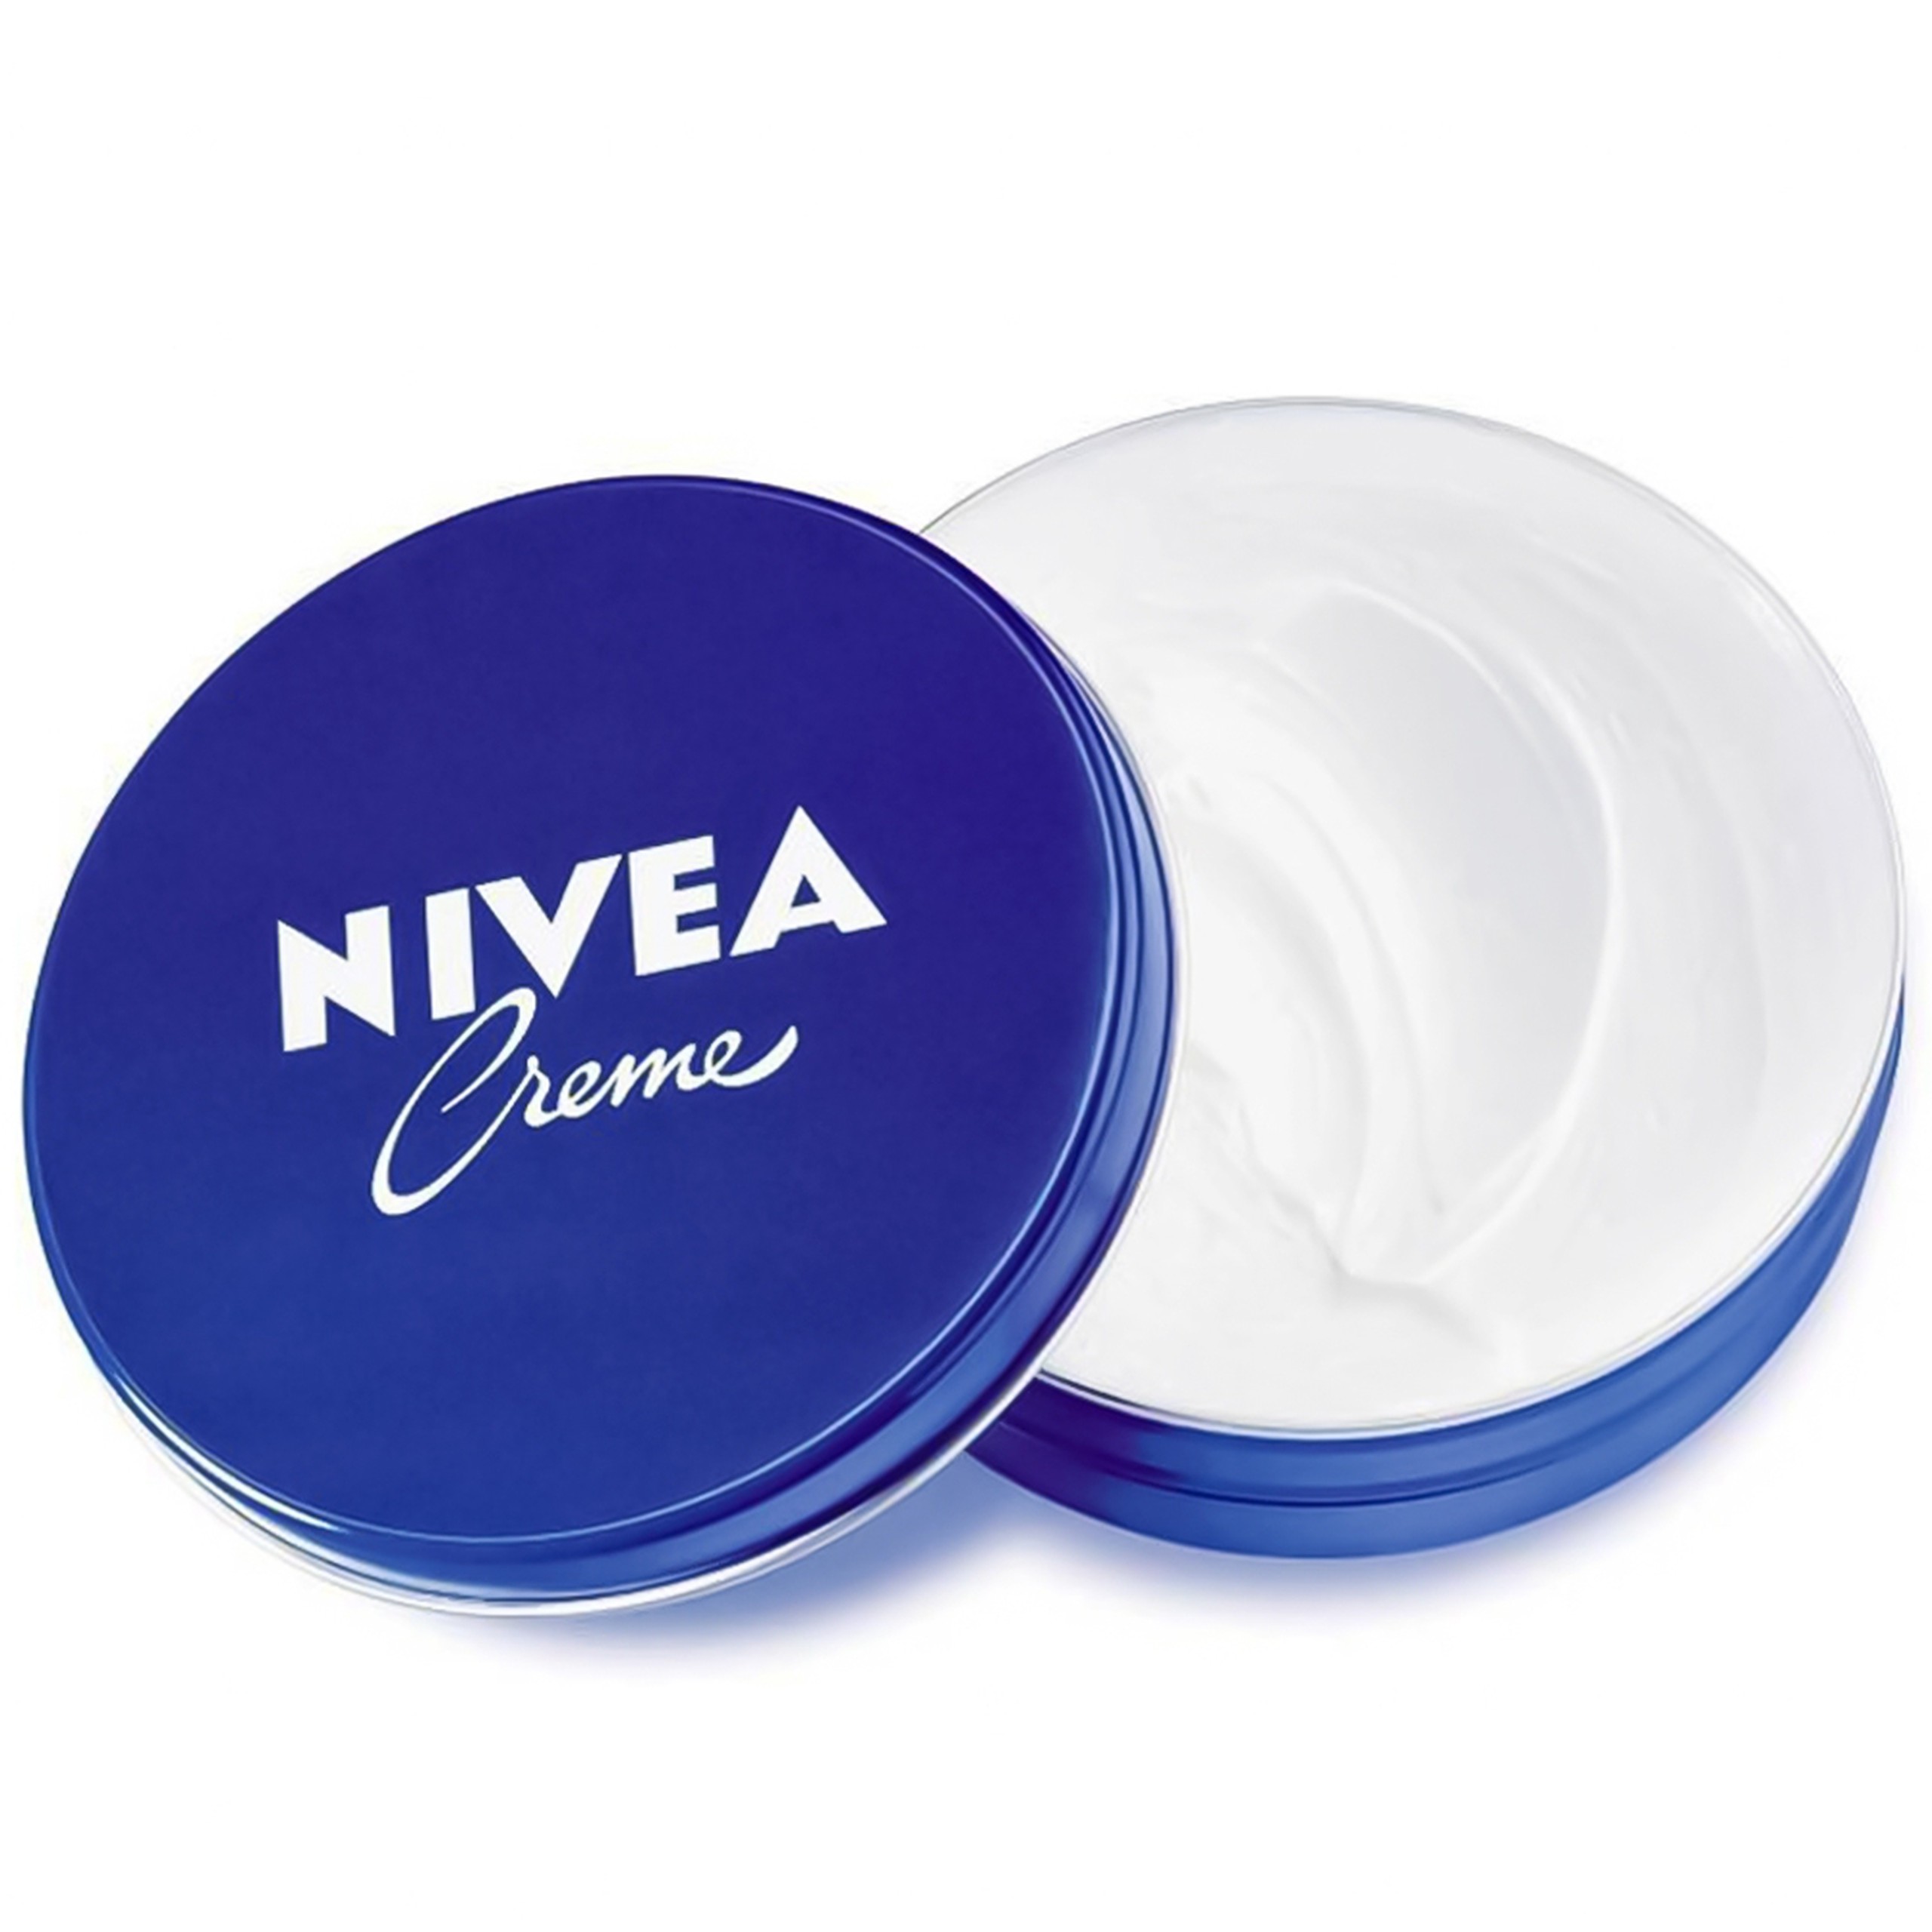 Kem Nivea Creme hỗ trợ dưỡng ẩm, bảo vệ và nuôi dưỡng làn da mềm mại (30ml)